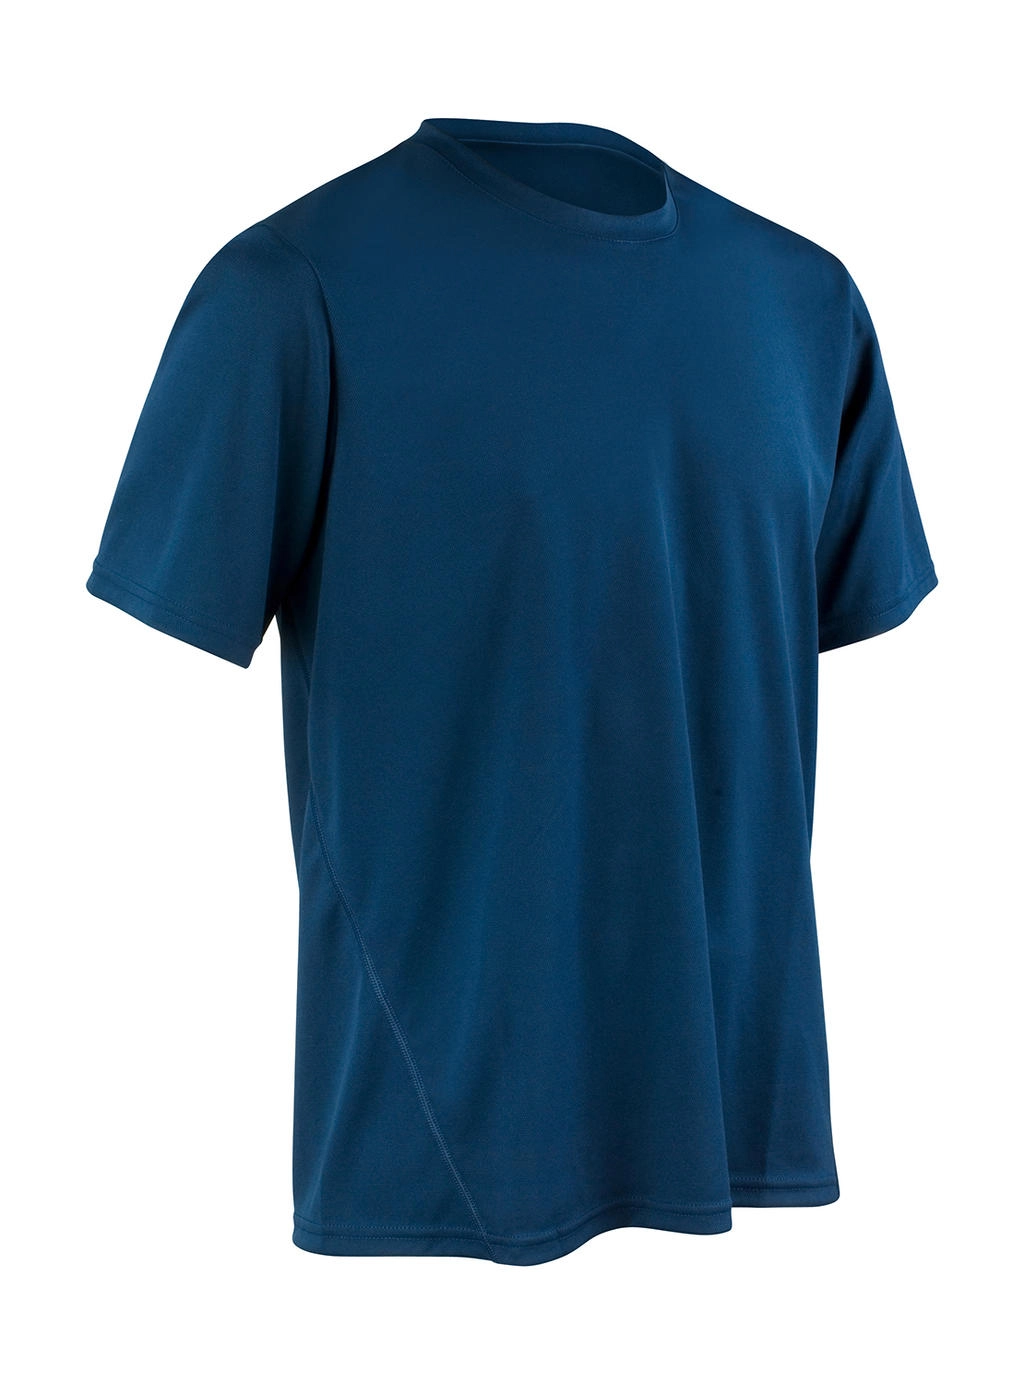 Performance T-Shirt zum Besticken und Bedrucken in der Farbe Navy mit Ihren Logo, Schriftzug oder Motiv.